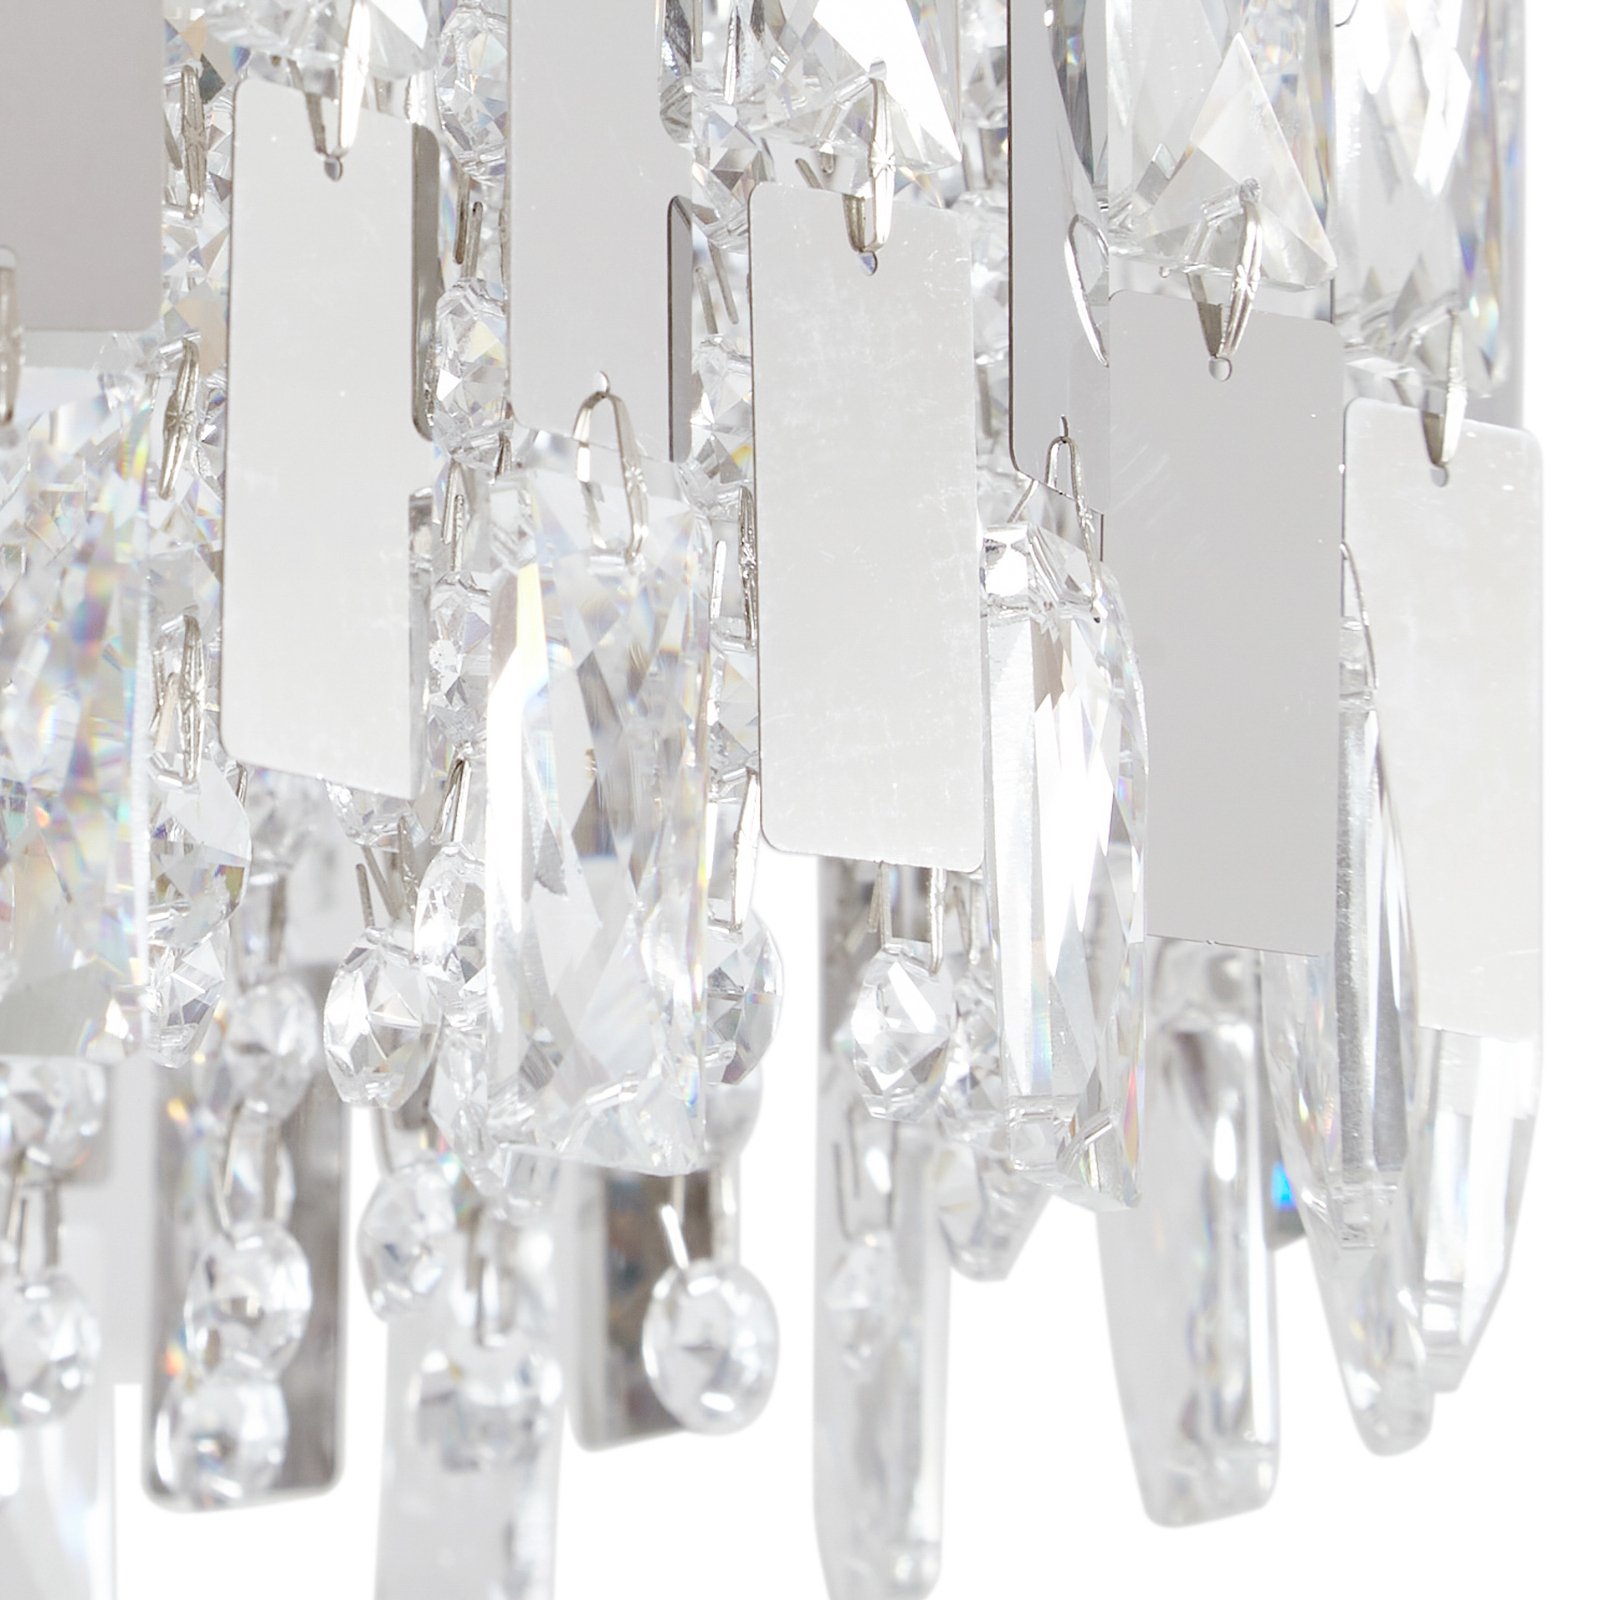 Lucande Arcan ceiling light, crystal glass, chrome